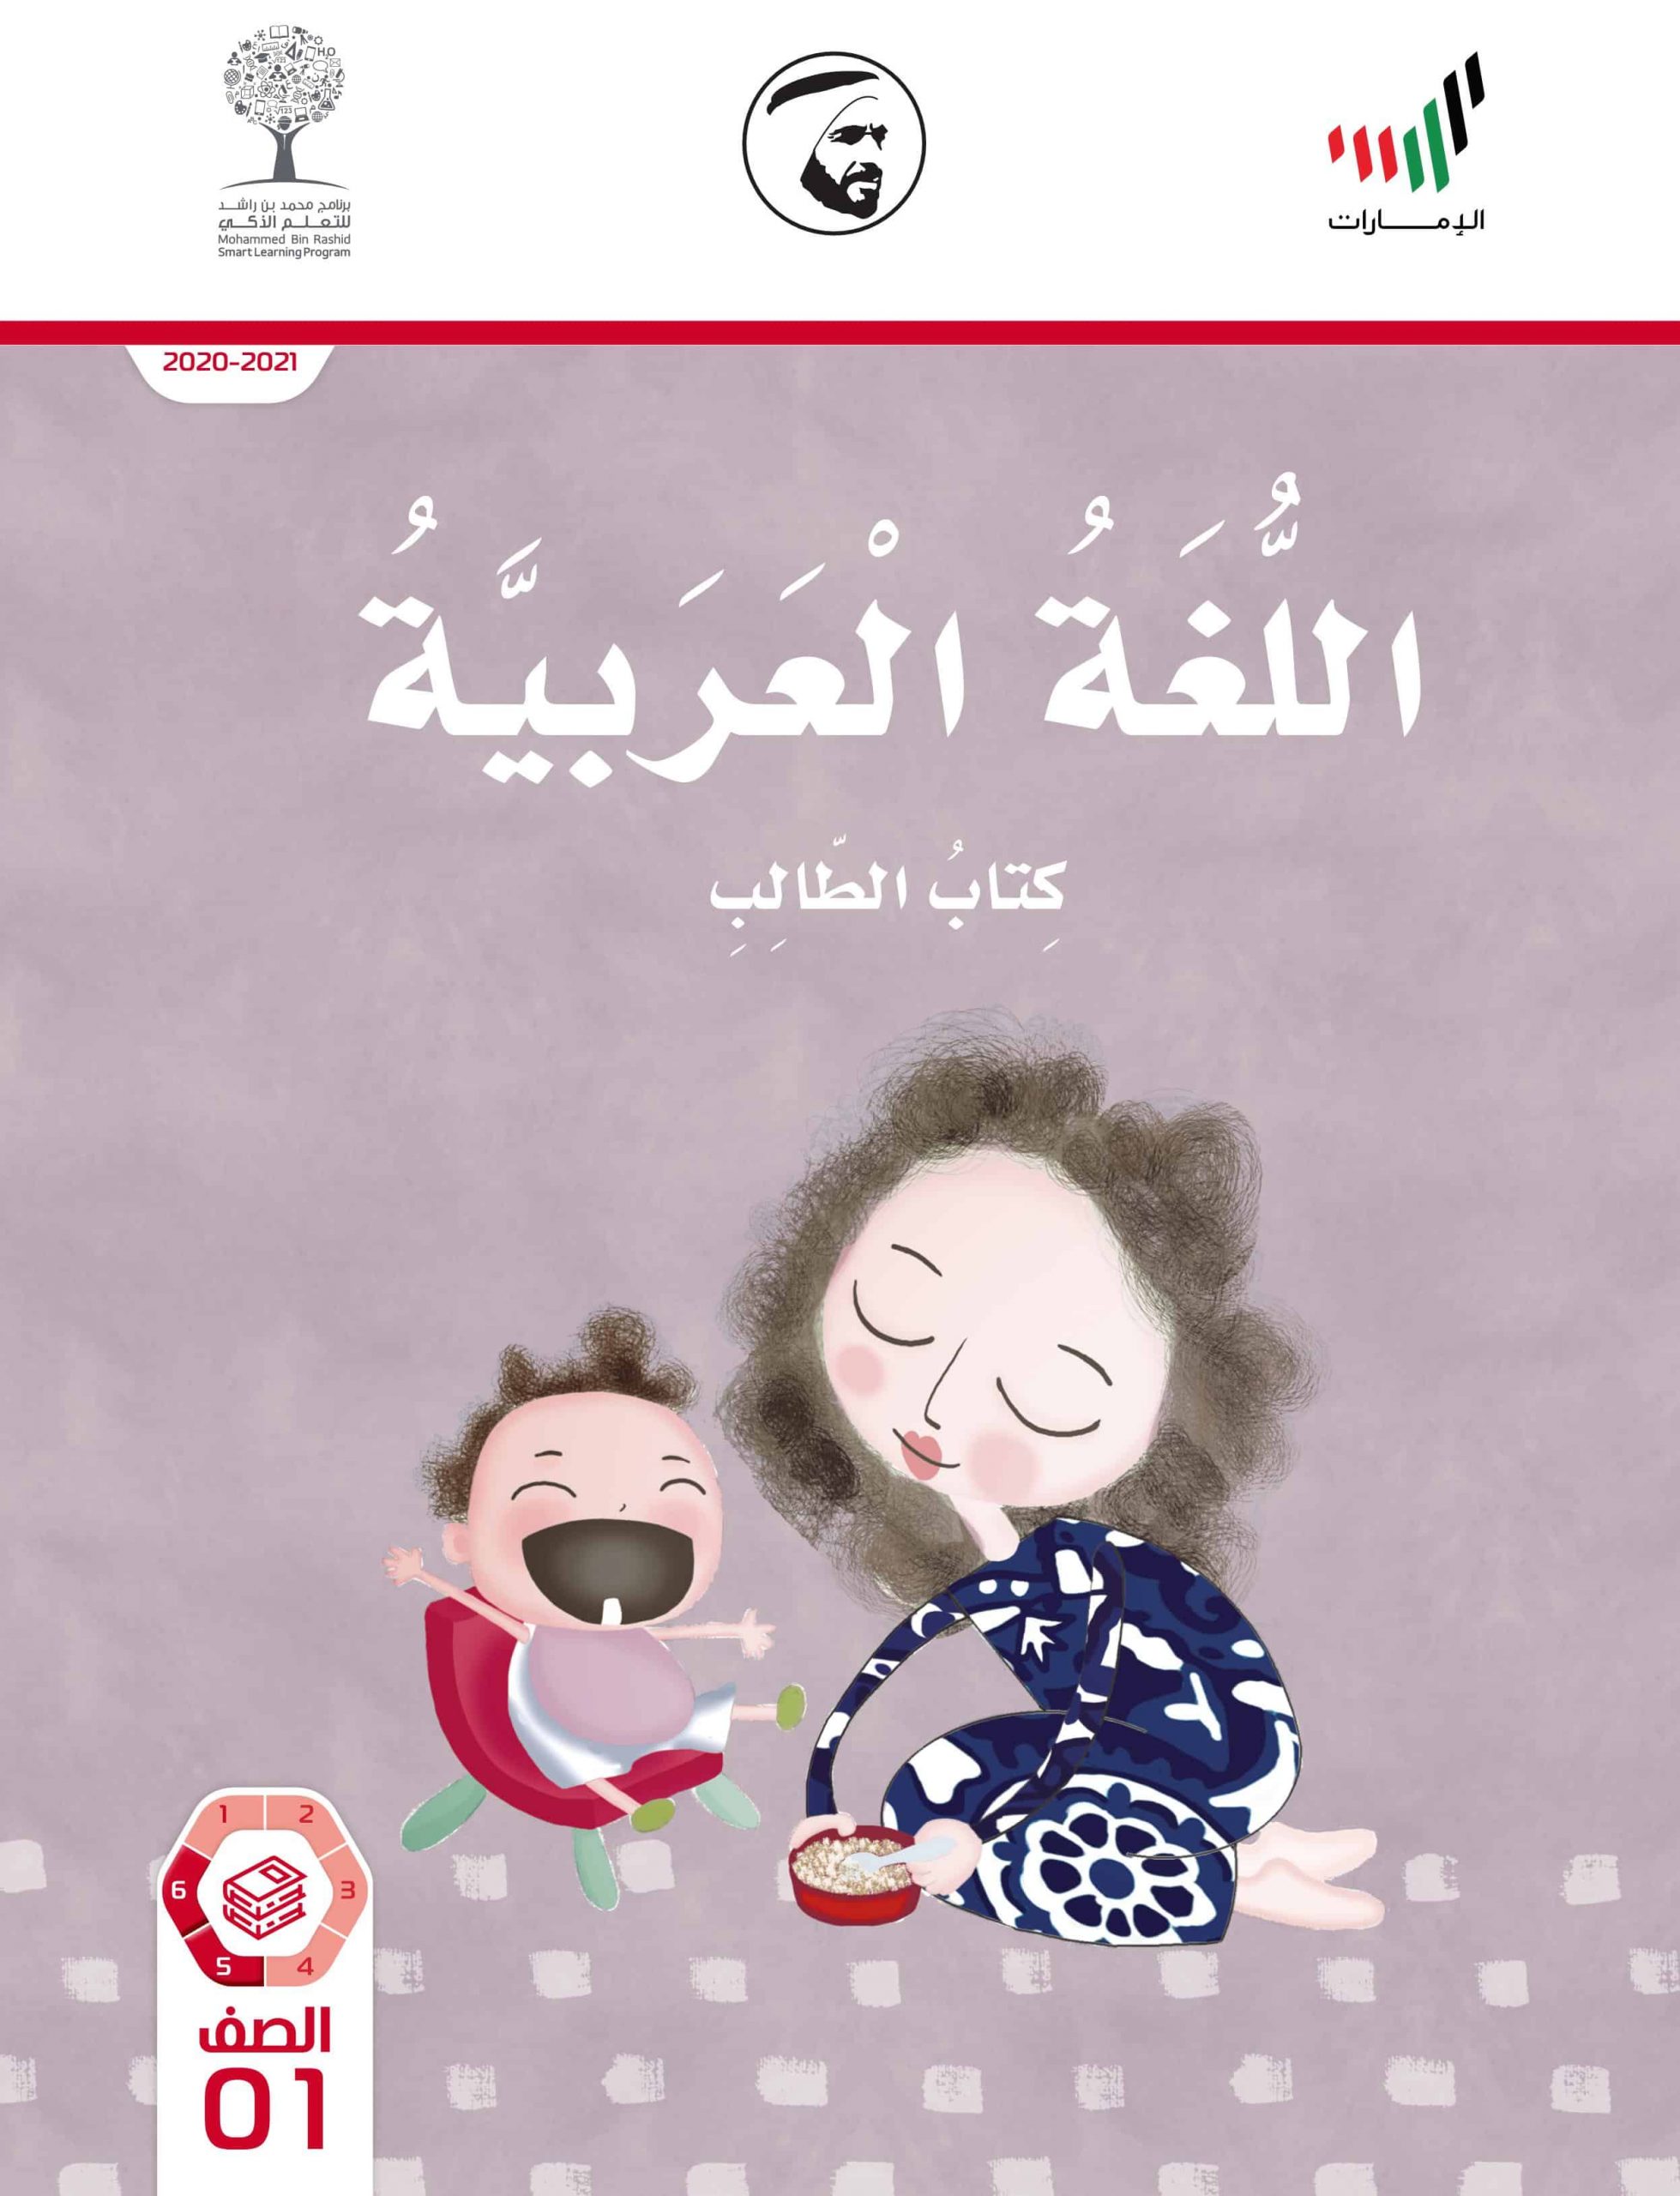 كتاب الطالب الفصل الدراسي الثالث 2020-2021 الصف الأول مادة اللغة العربية